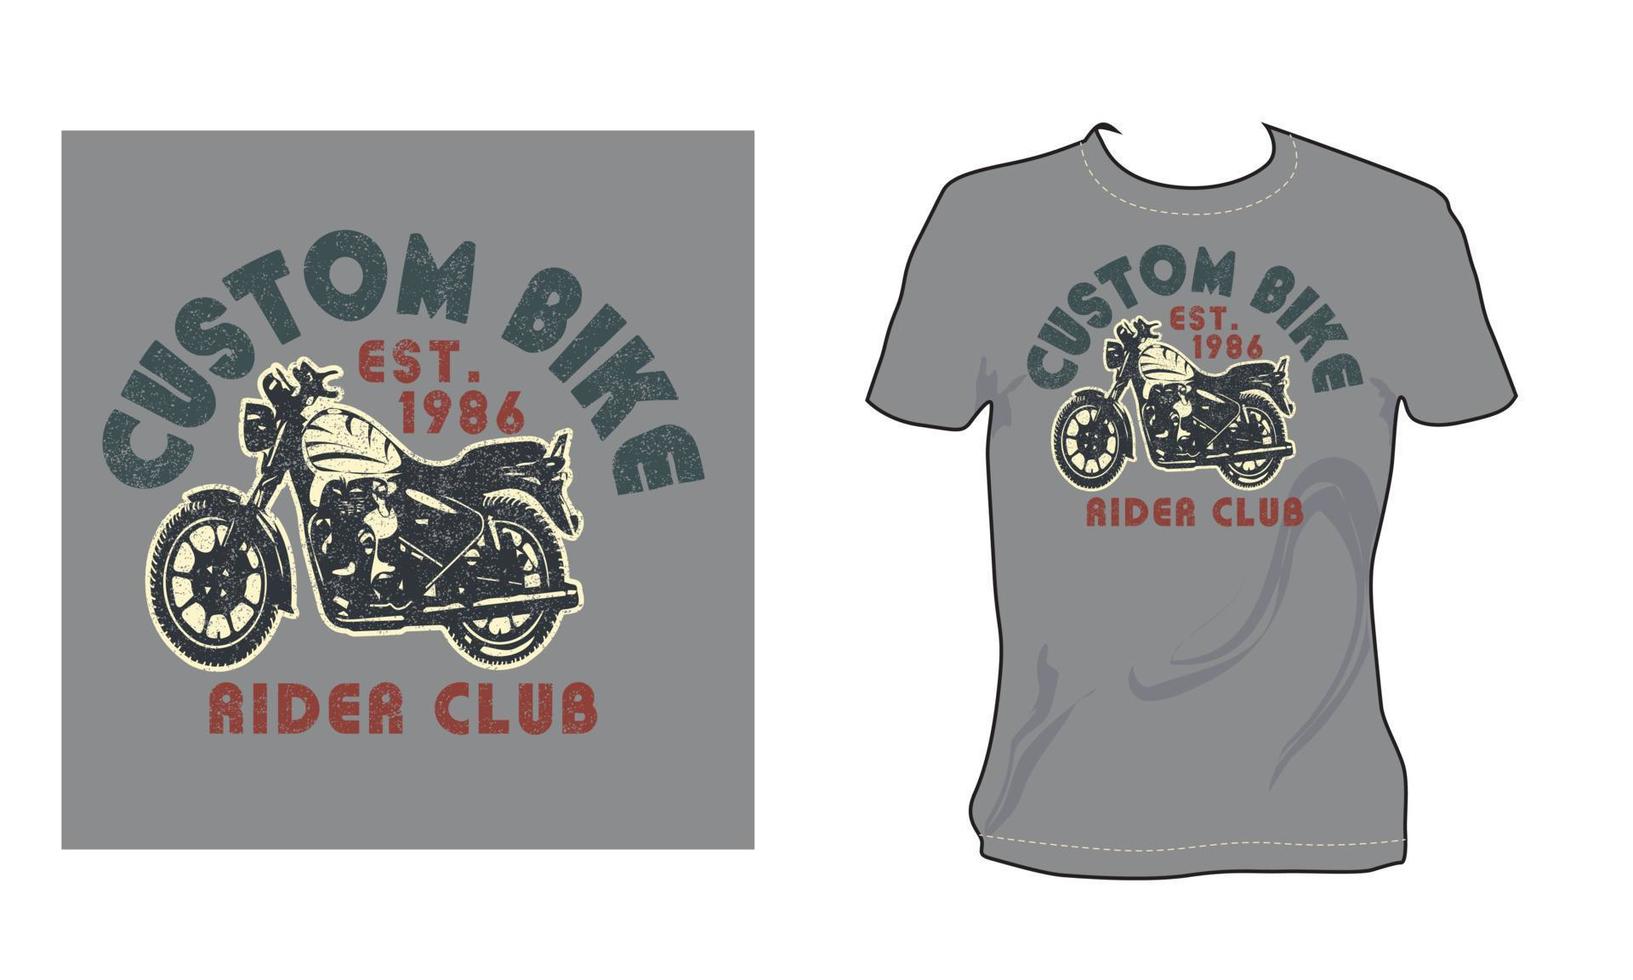 beställnings- cykel ryttare klubb uppskattningsvis 1986 årgång brocken vektor konst svart och vit Färg t skjorta design